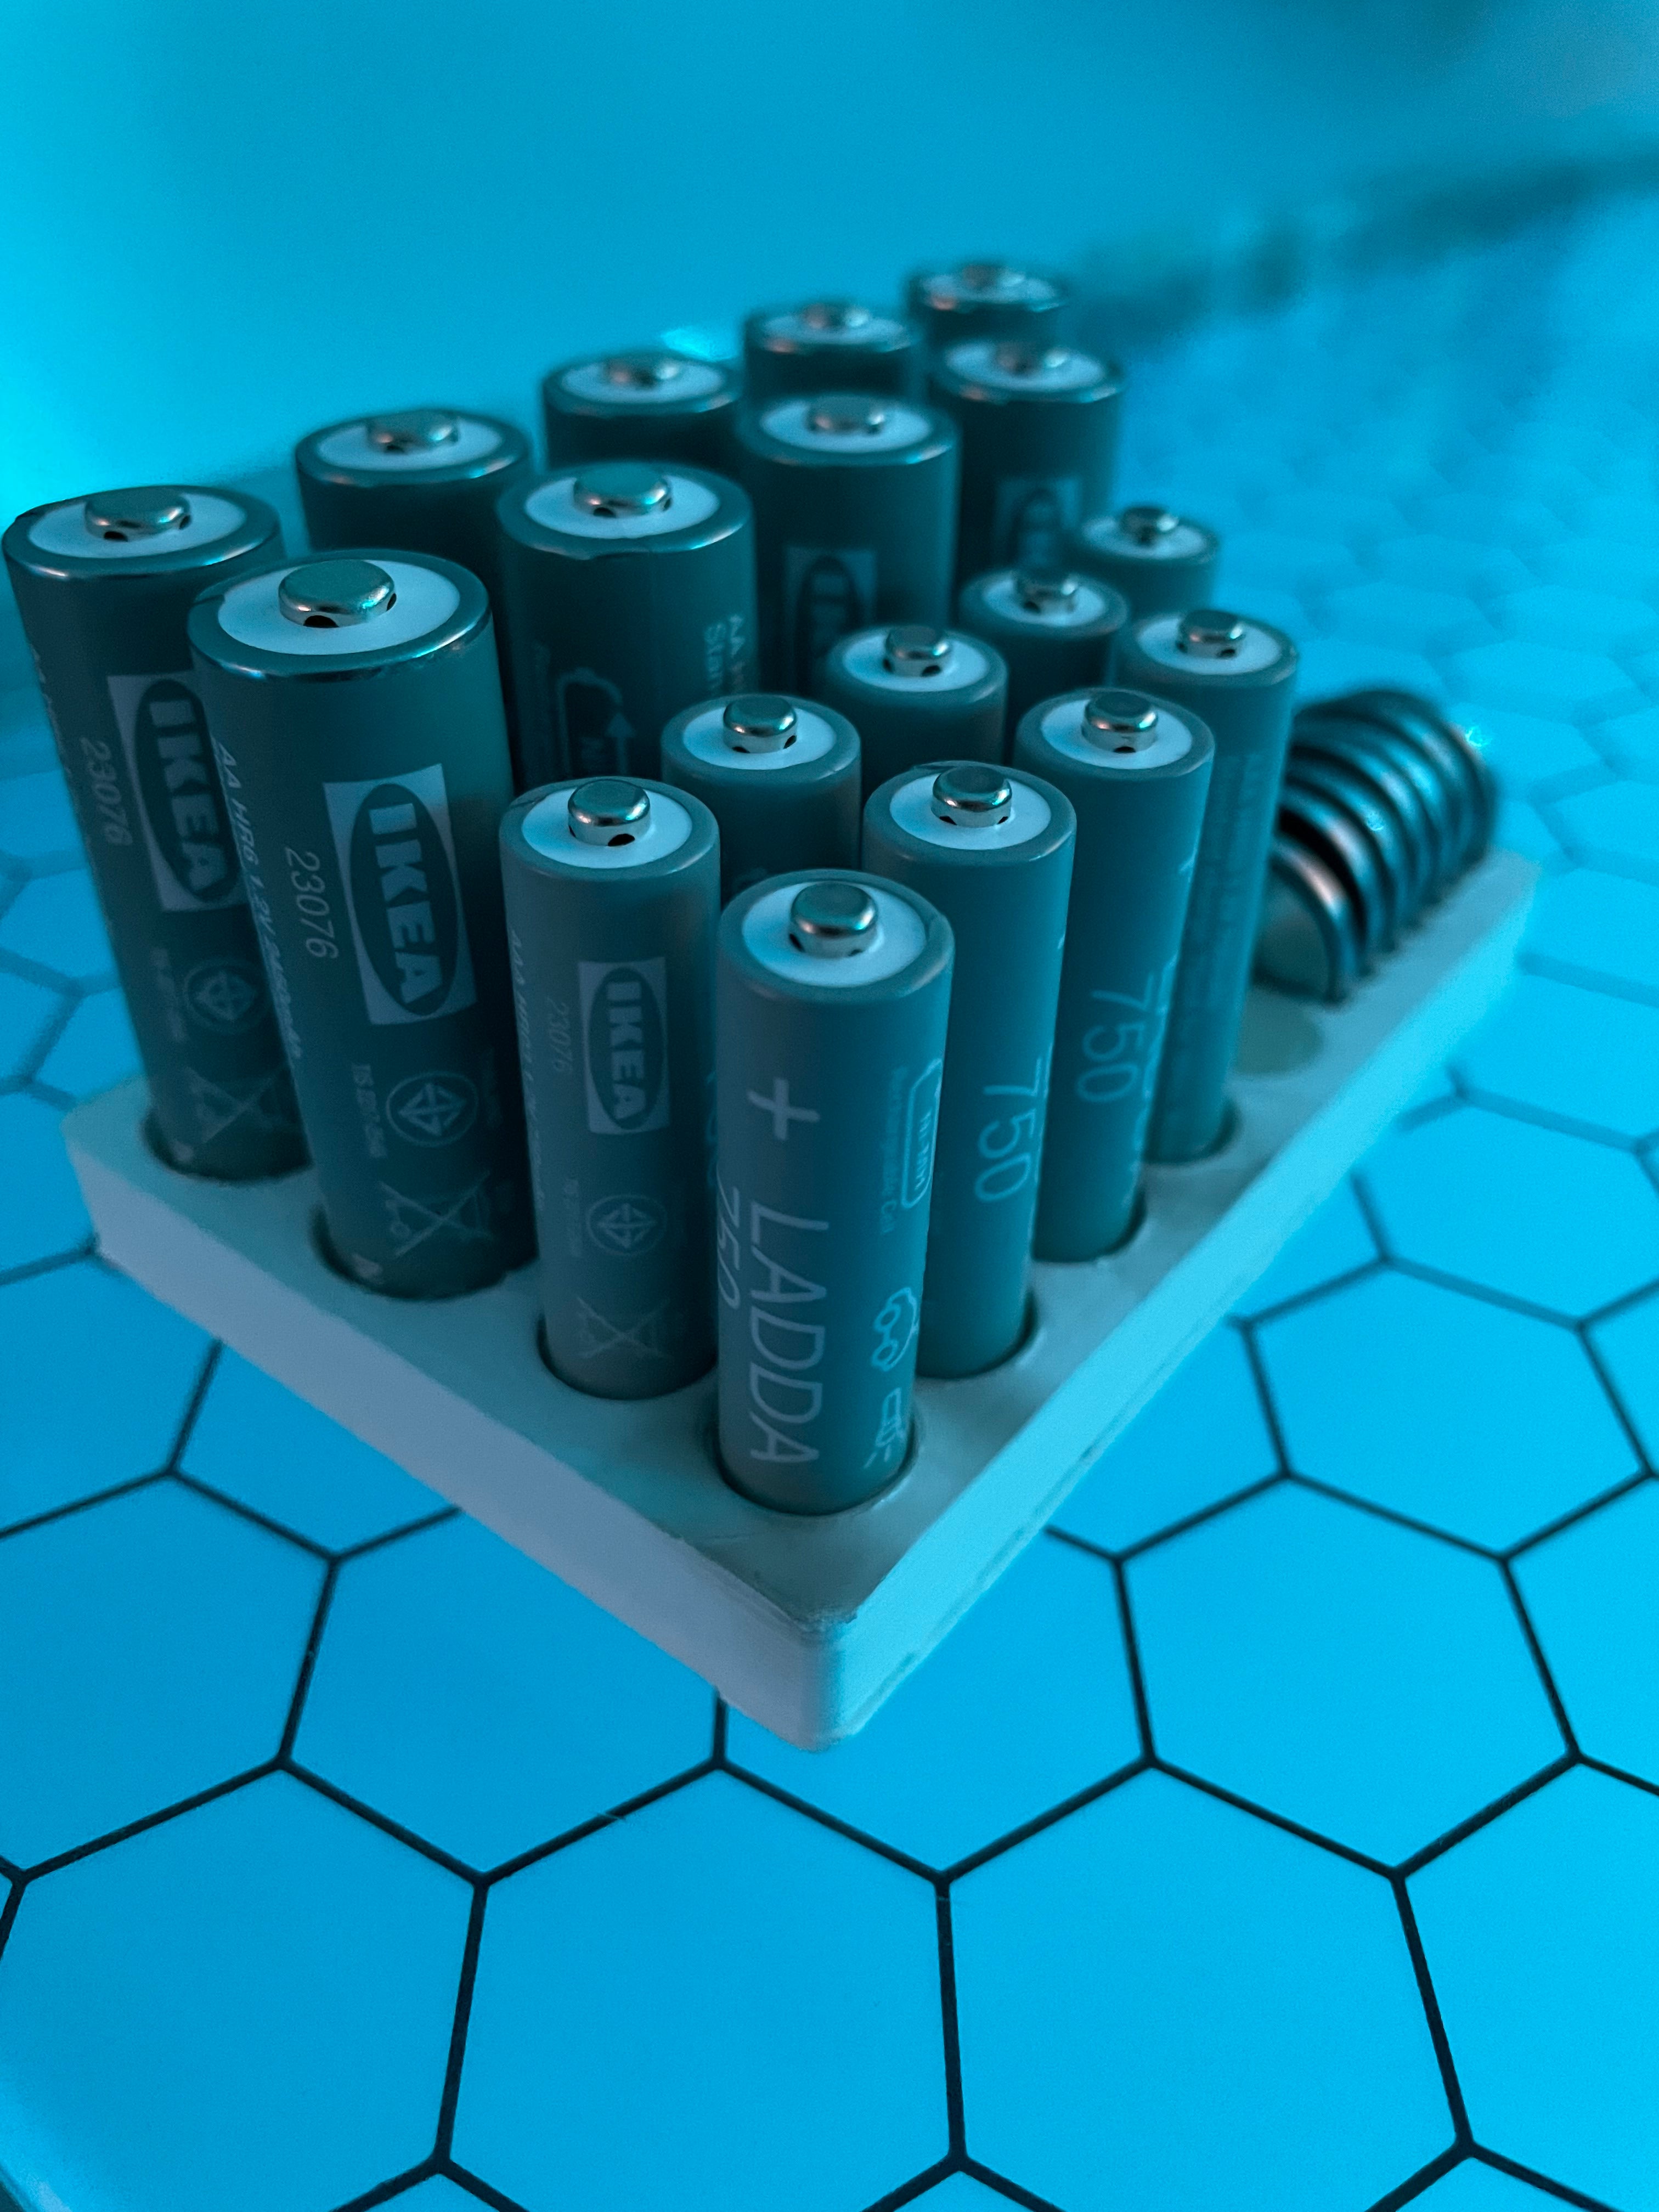 Batterihållare för AA, AAA och CR2032 batterier (passar IKEA Ladda)